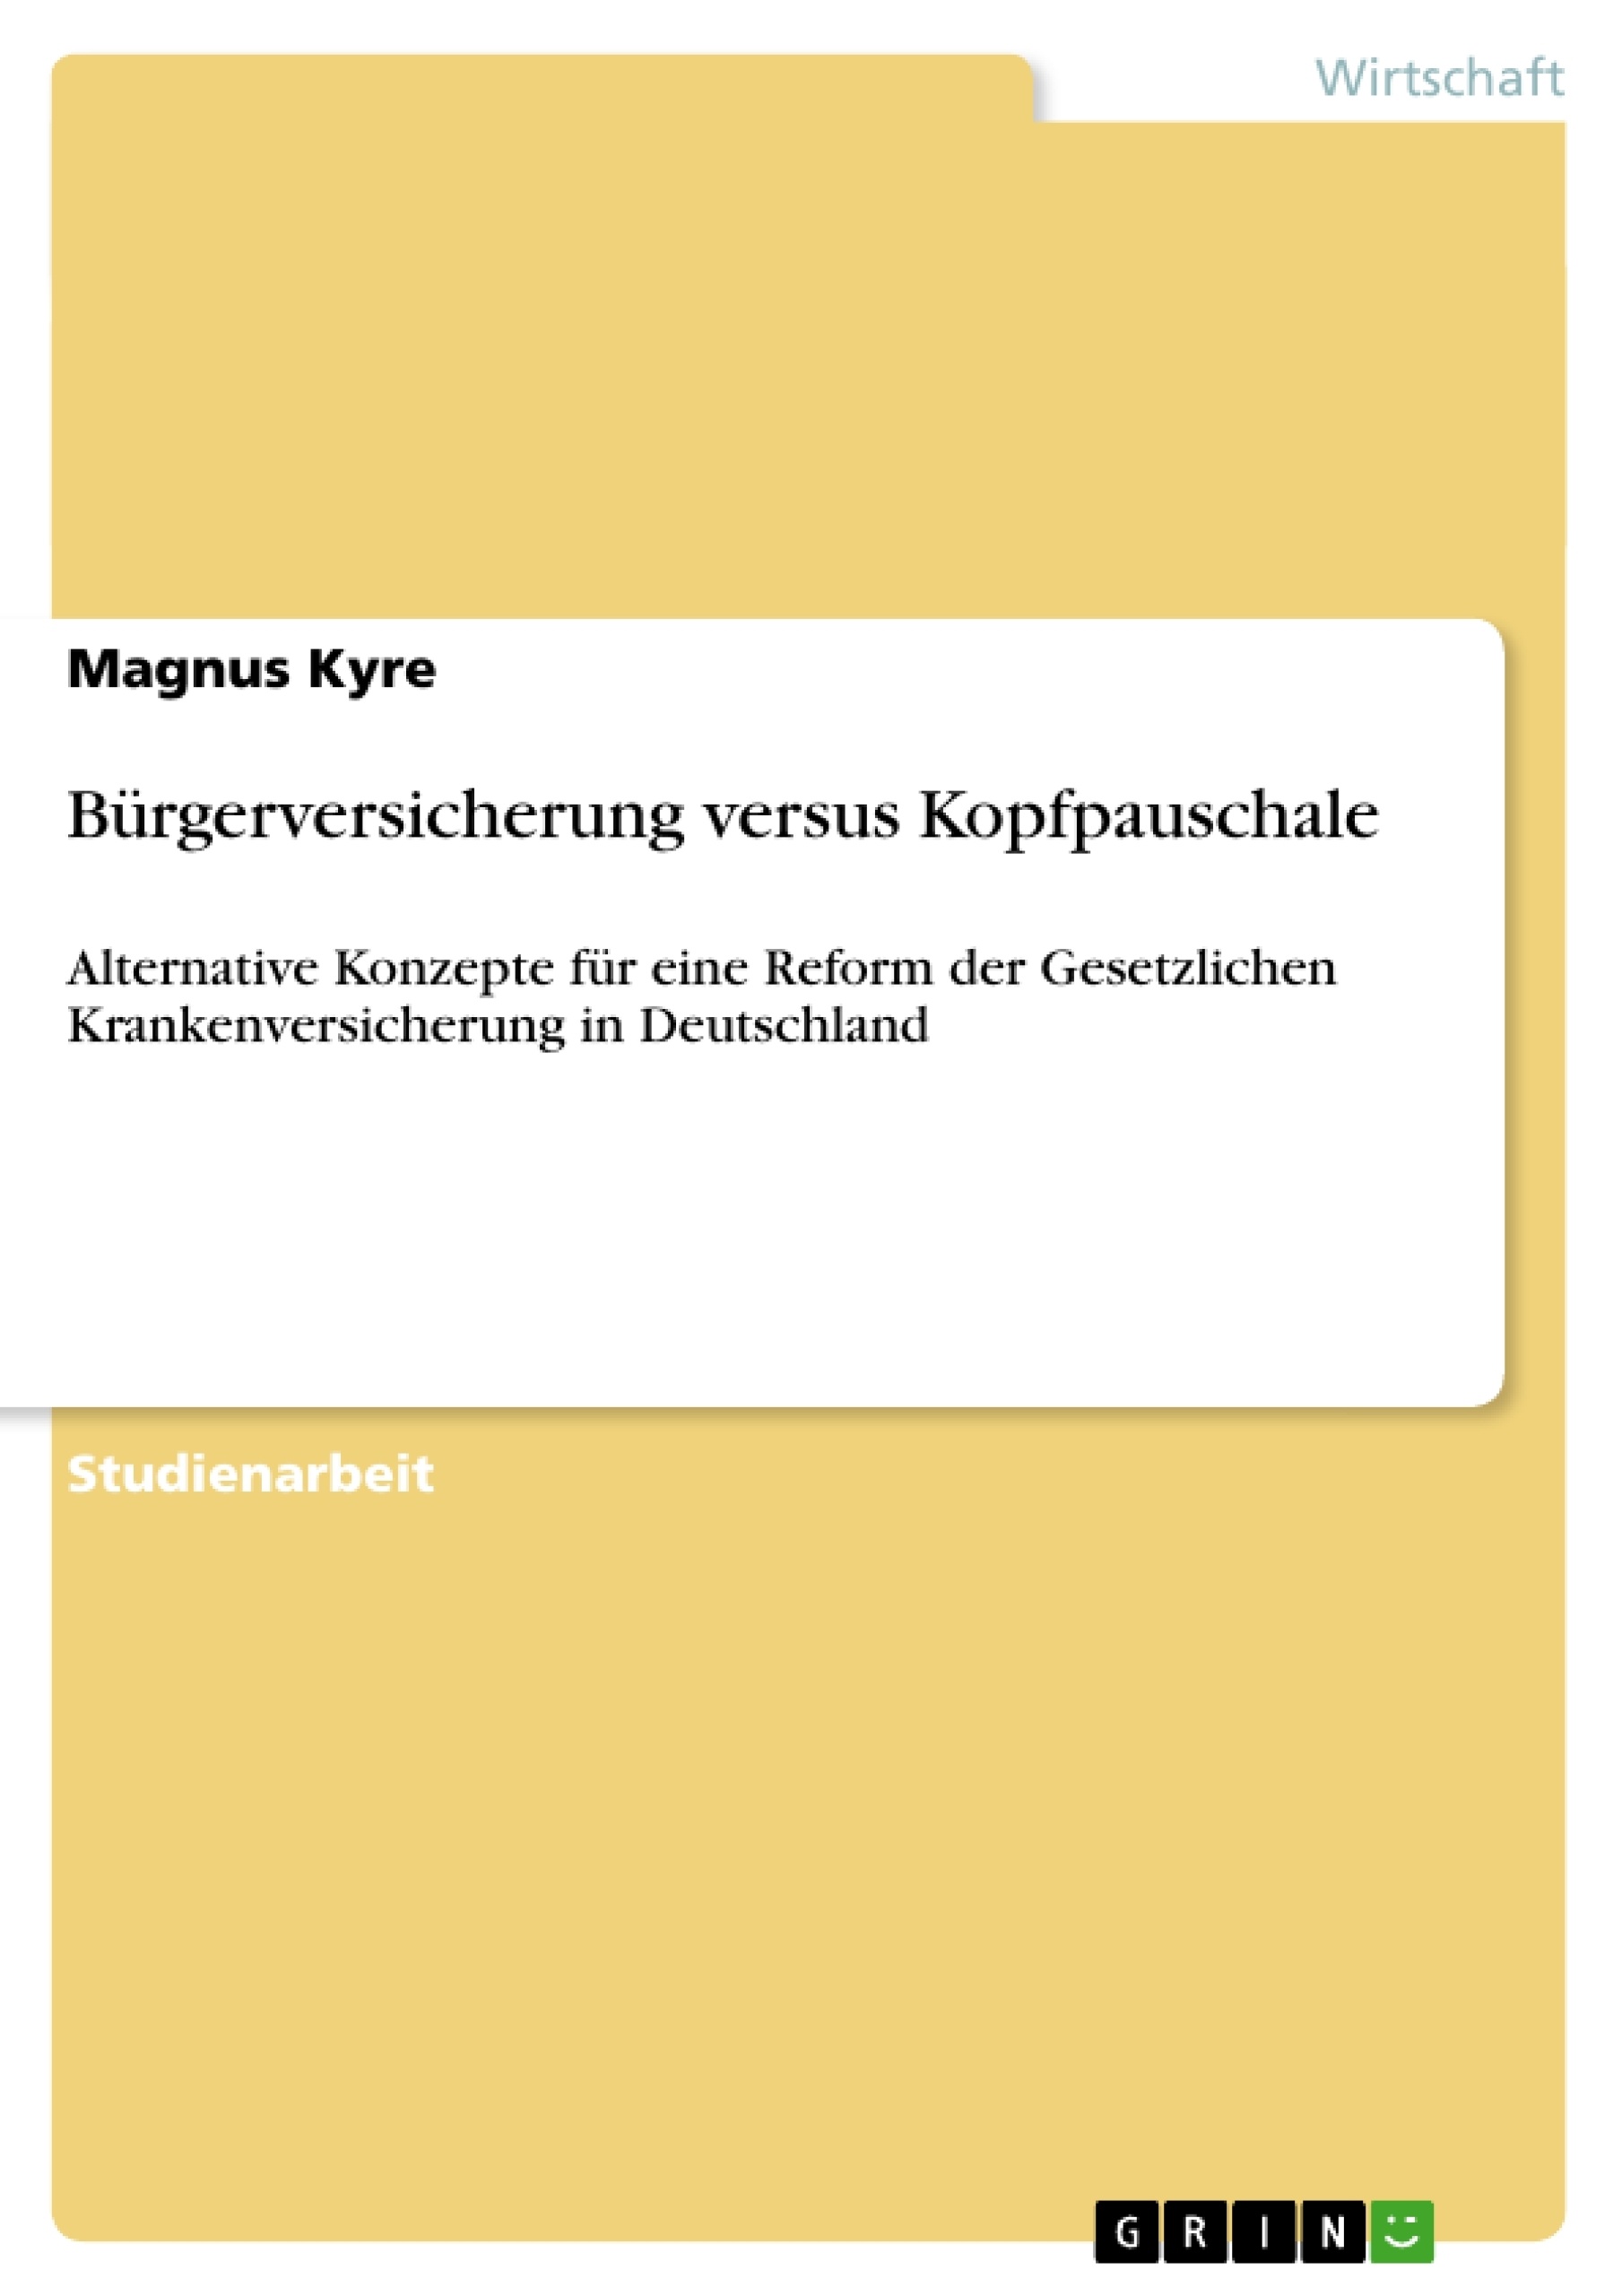 Title: Bürgerversicherung versus Kopfpauschale